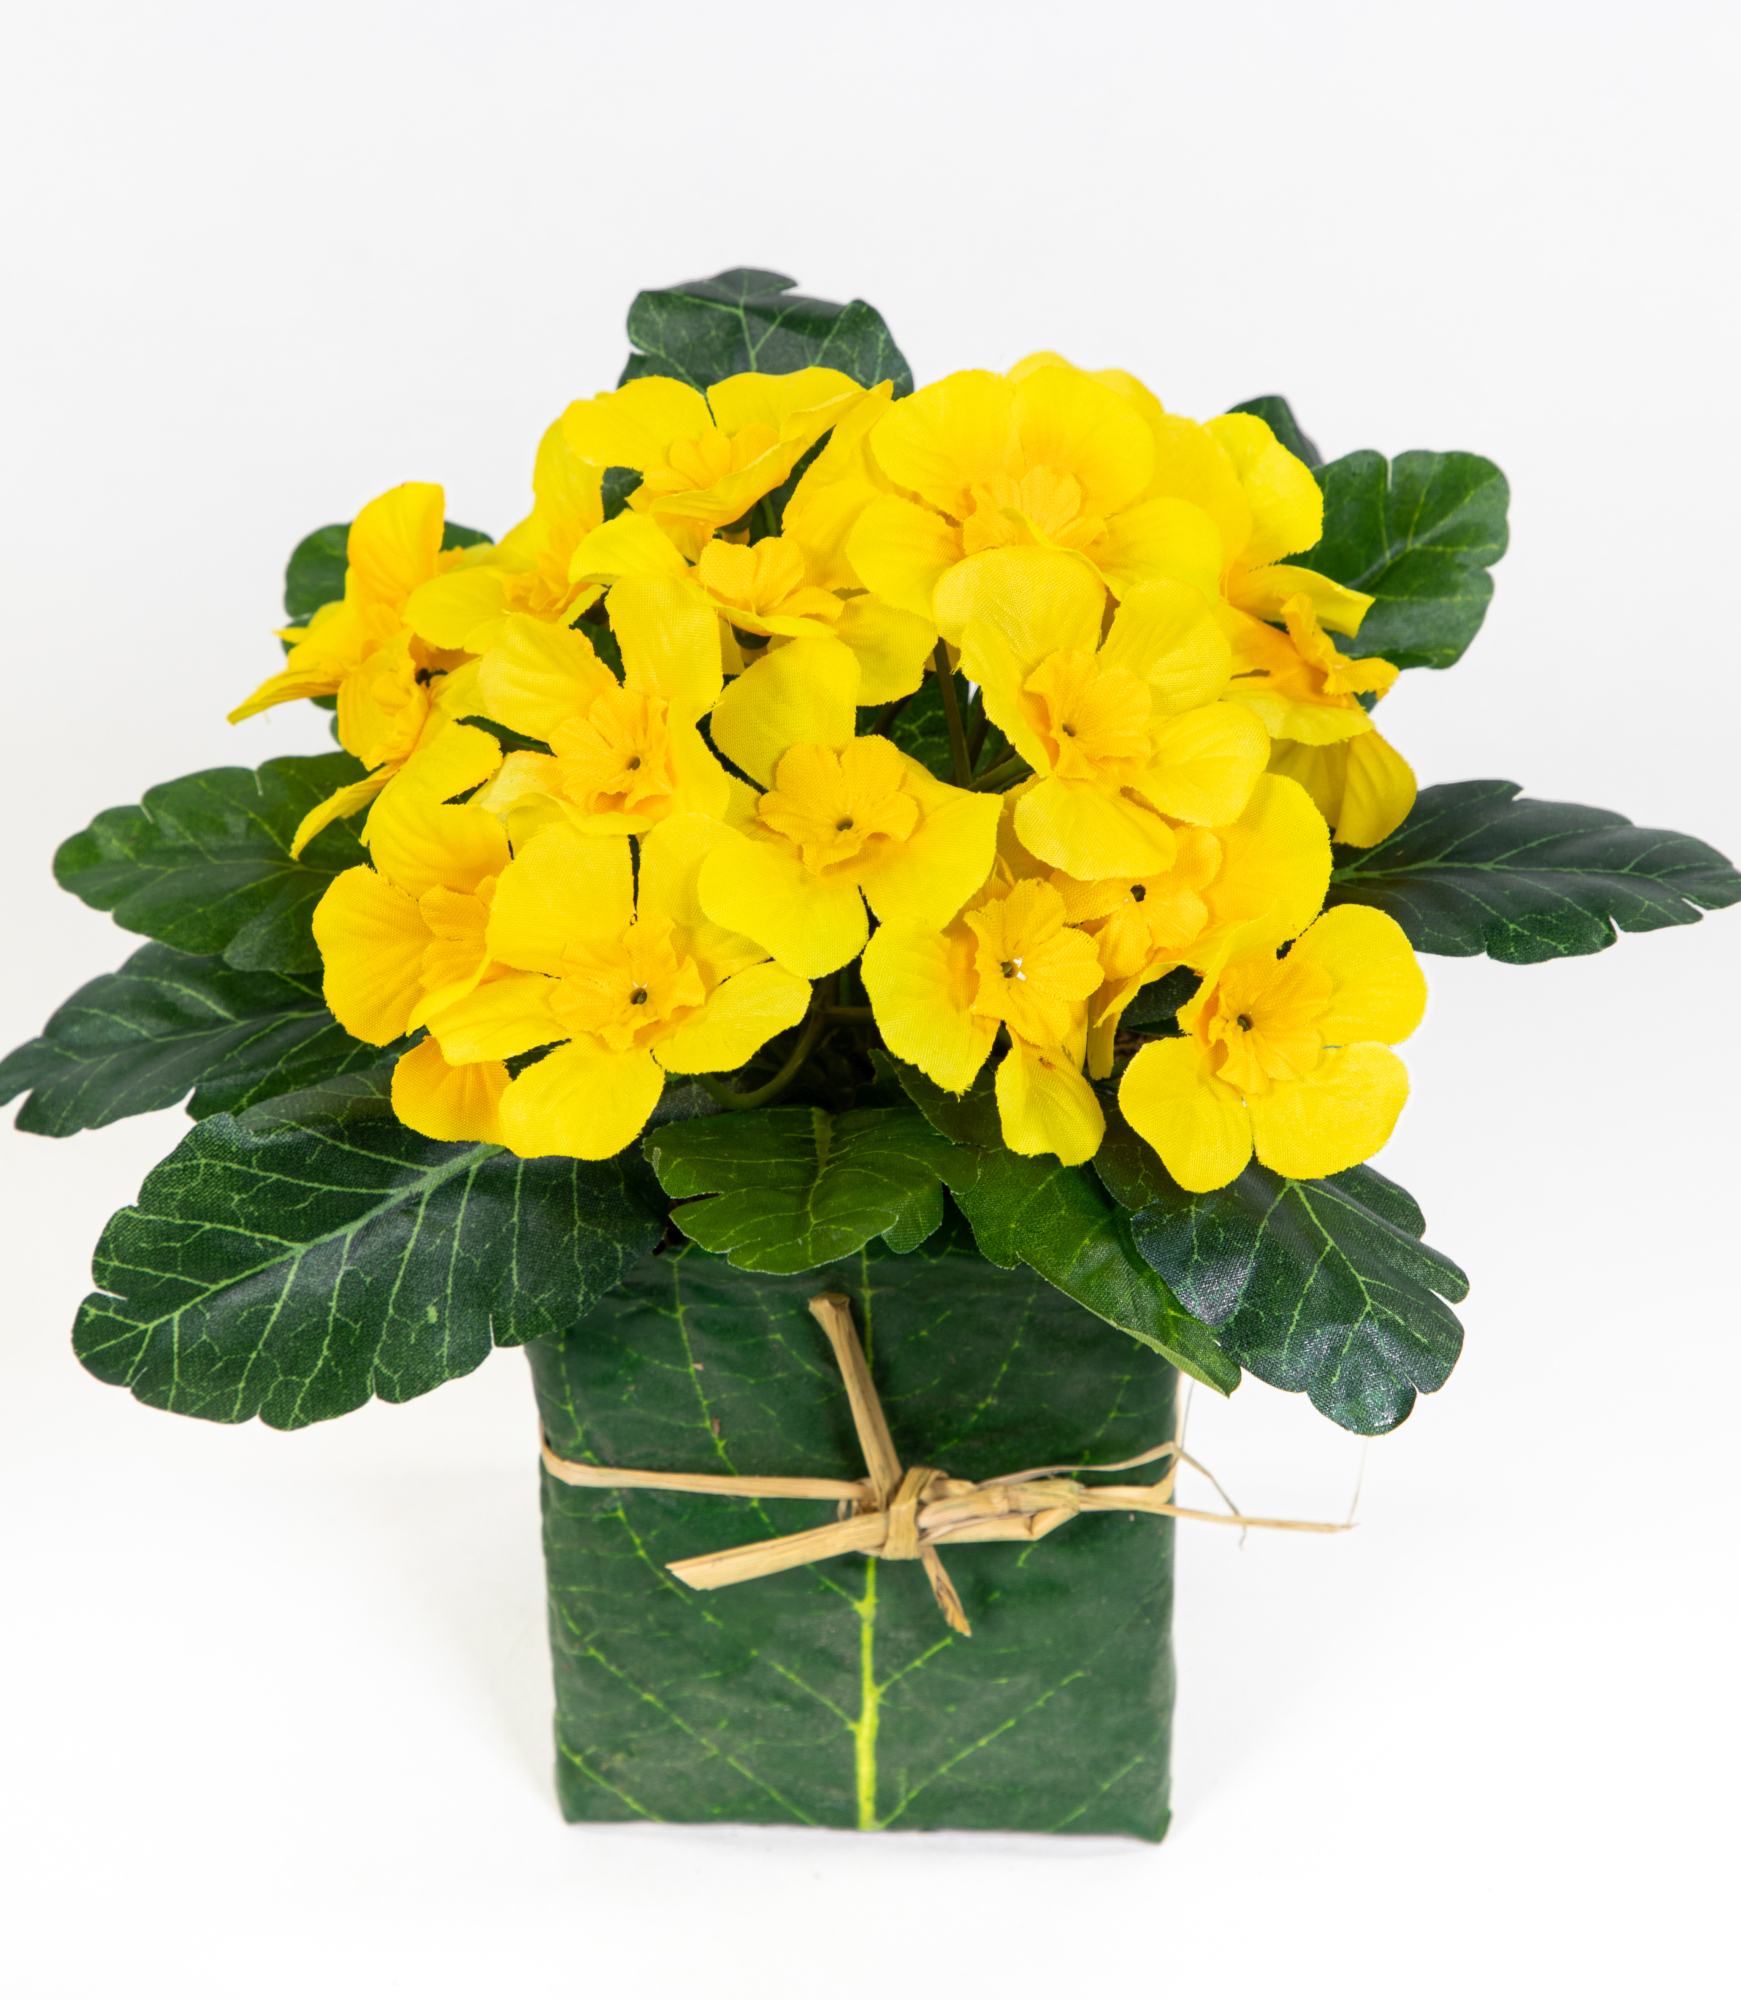 Künstliche Primel im Blatttopf 28cm gelb PM künstliche Pflanzen Primelbusch Seidenblumen Kunstblumen Kunstpflanzen